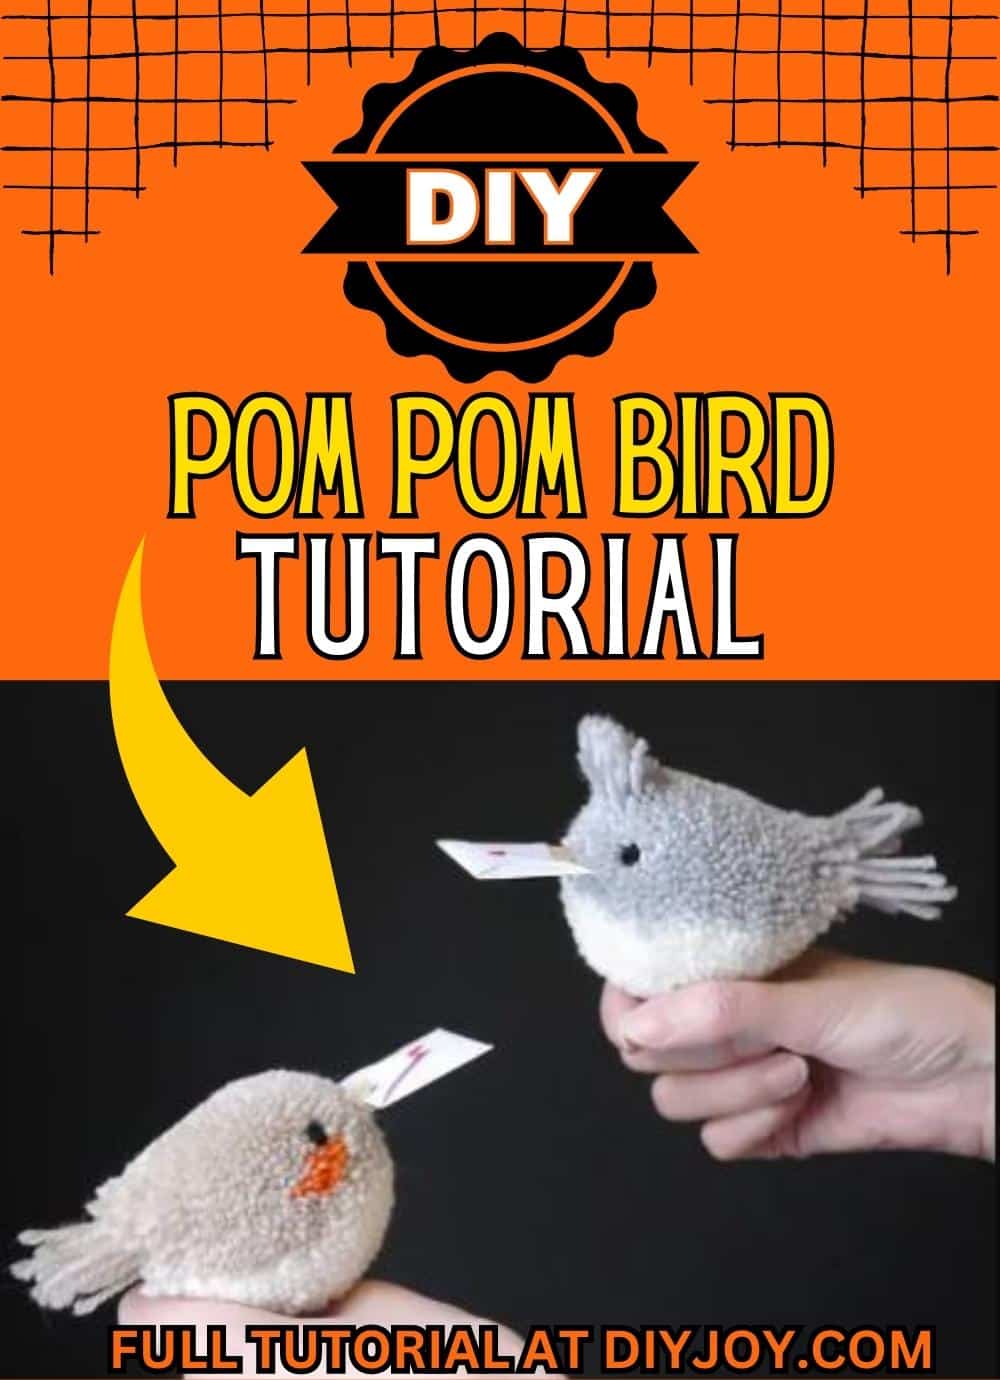 DIY Pom Pom Love Birds Tutorial